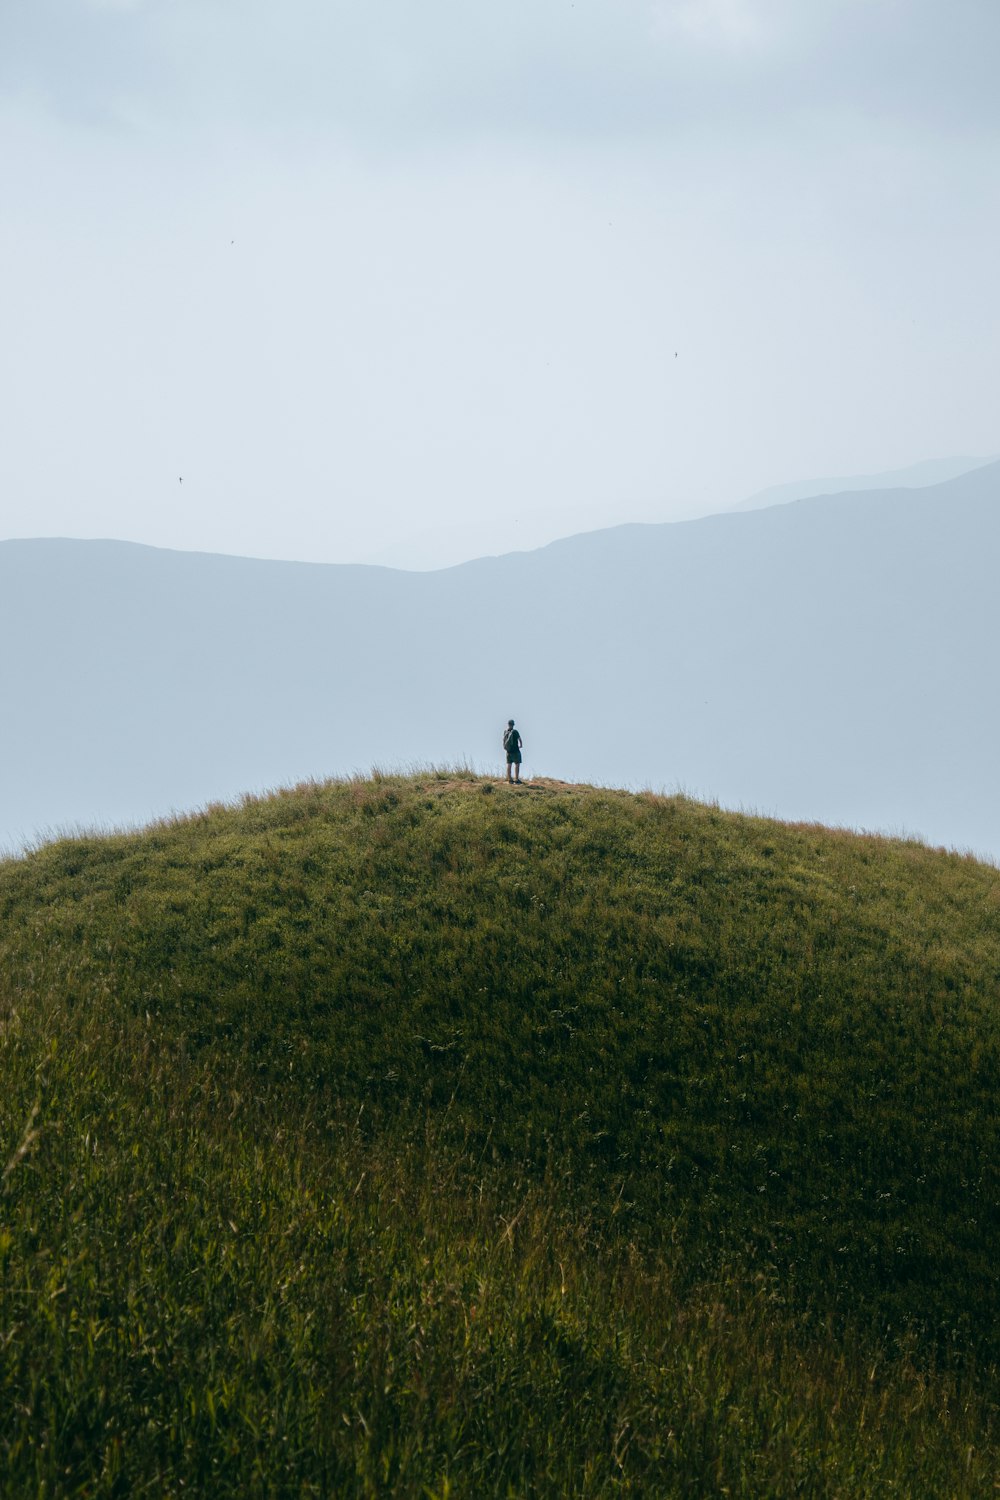 Eine einsame Person, die auf einem grasbewachsenen Hügel steht